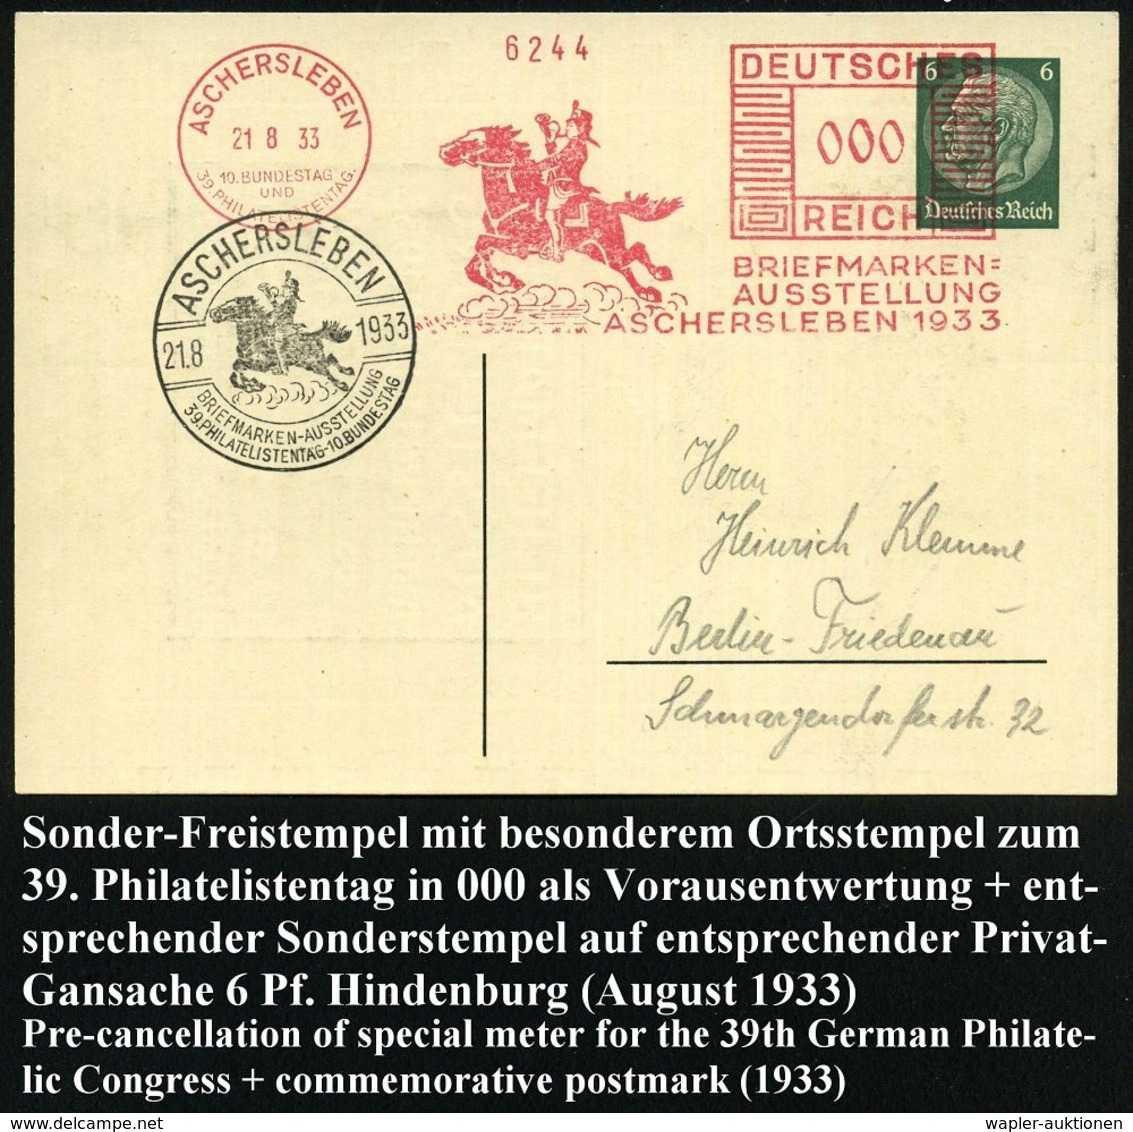 ASCHERSLEBEN/ 10.BUNDESTAG/ U./ 39.PHILAT.TAG/ BRIEFMARKEN-/ AUSSTELLUNG.. 1933 (21.8.) AFS Sonderform (Postreiter) In 0 - Esposizioni Filateliche